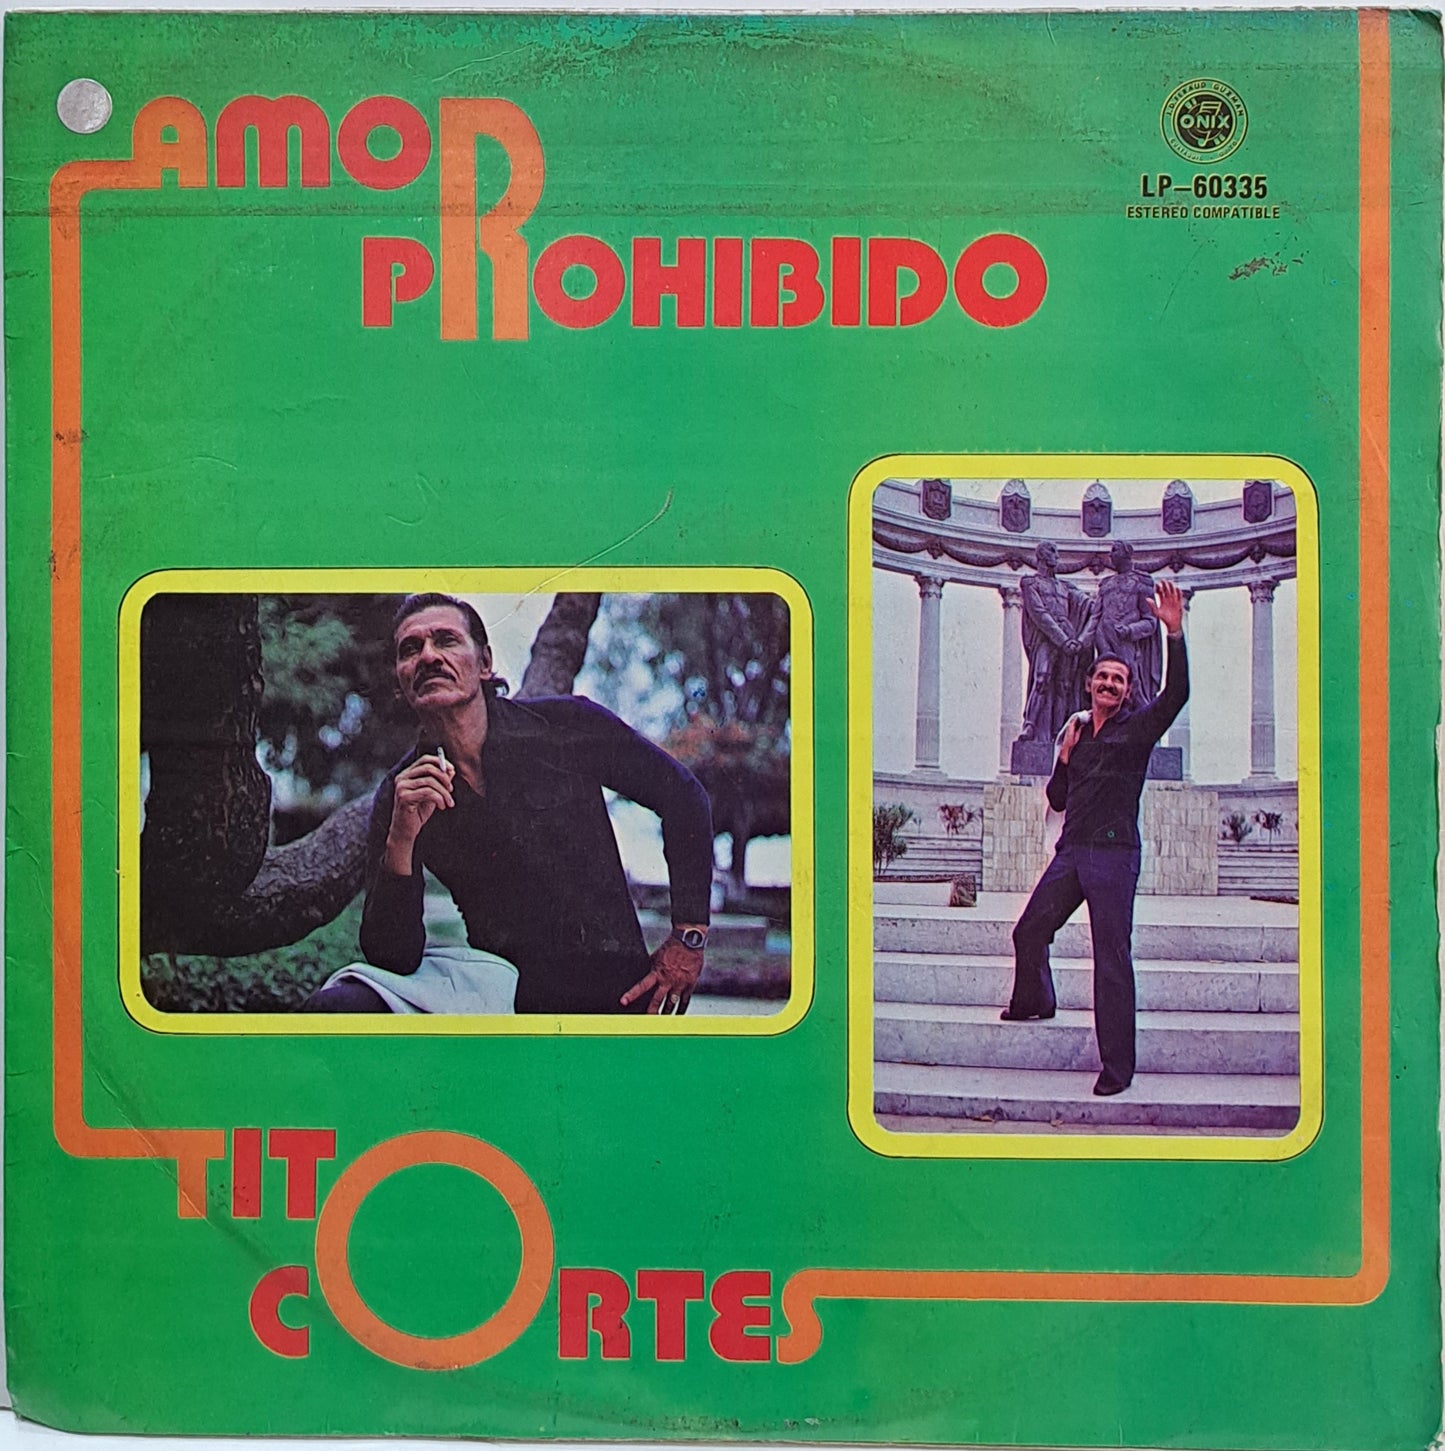 TITO CORTES - AMOR  PROHIBIDO LP